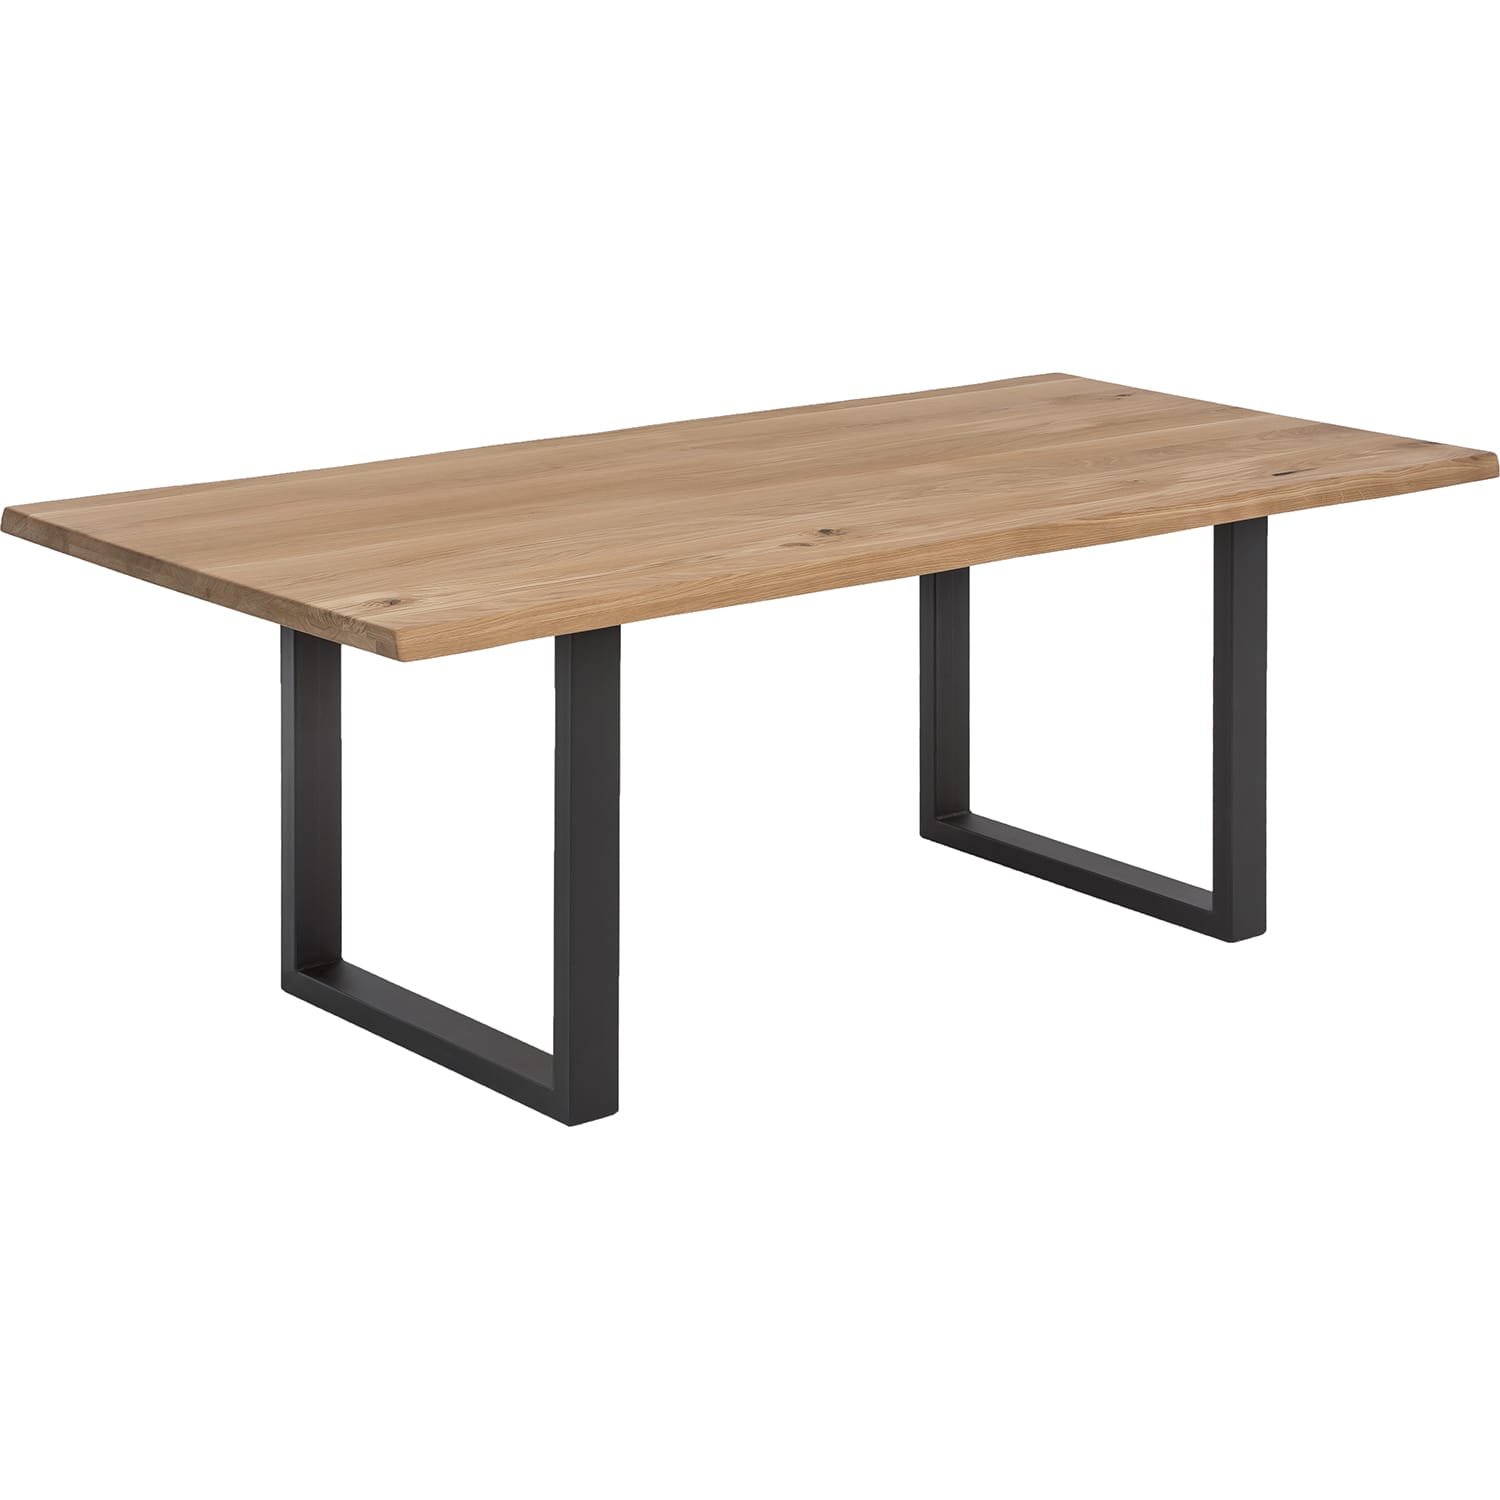 natur | möbel antikschwarz | | Möbel Tisch Tische mutoni Wildeiche | Esstische 120x80 Metall | Massivholztische